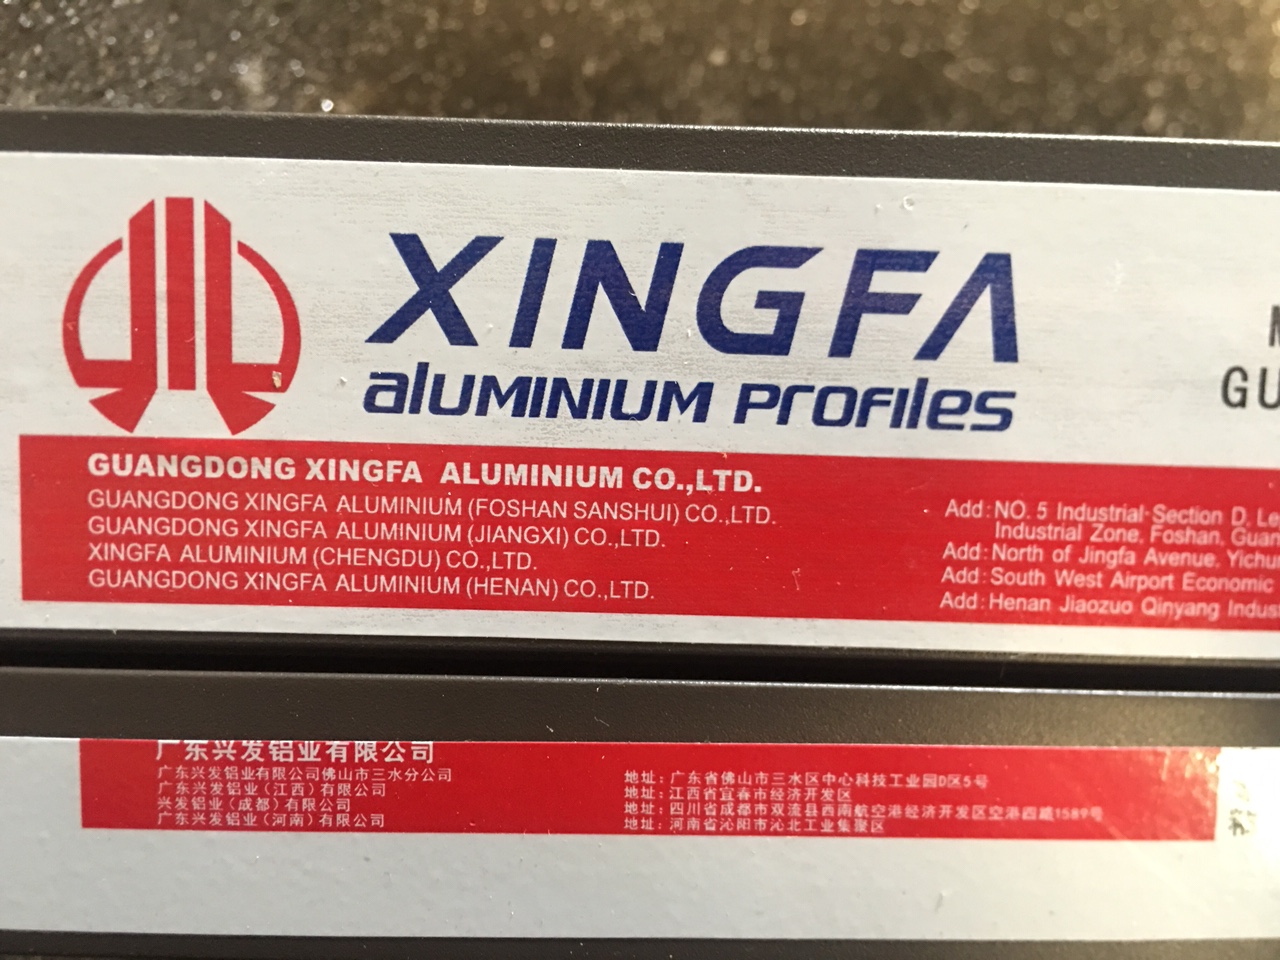 Cửa nhôm Xingfa tem đỏ chính hãng được nhập khẩu từ Quảng Đông, Trung Quốc.